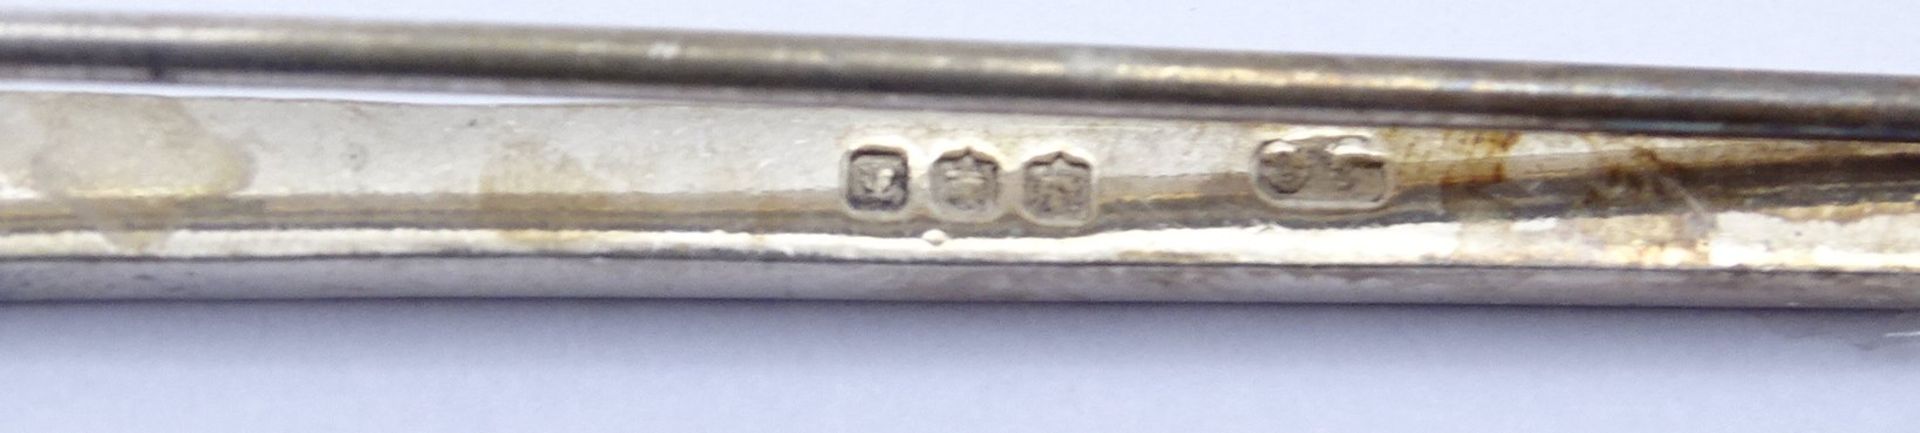 Brosche in Form eines Schwertes, L. 8,0cm, Silber, 7,2g. - Image 3 of 3